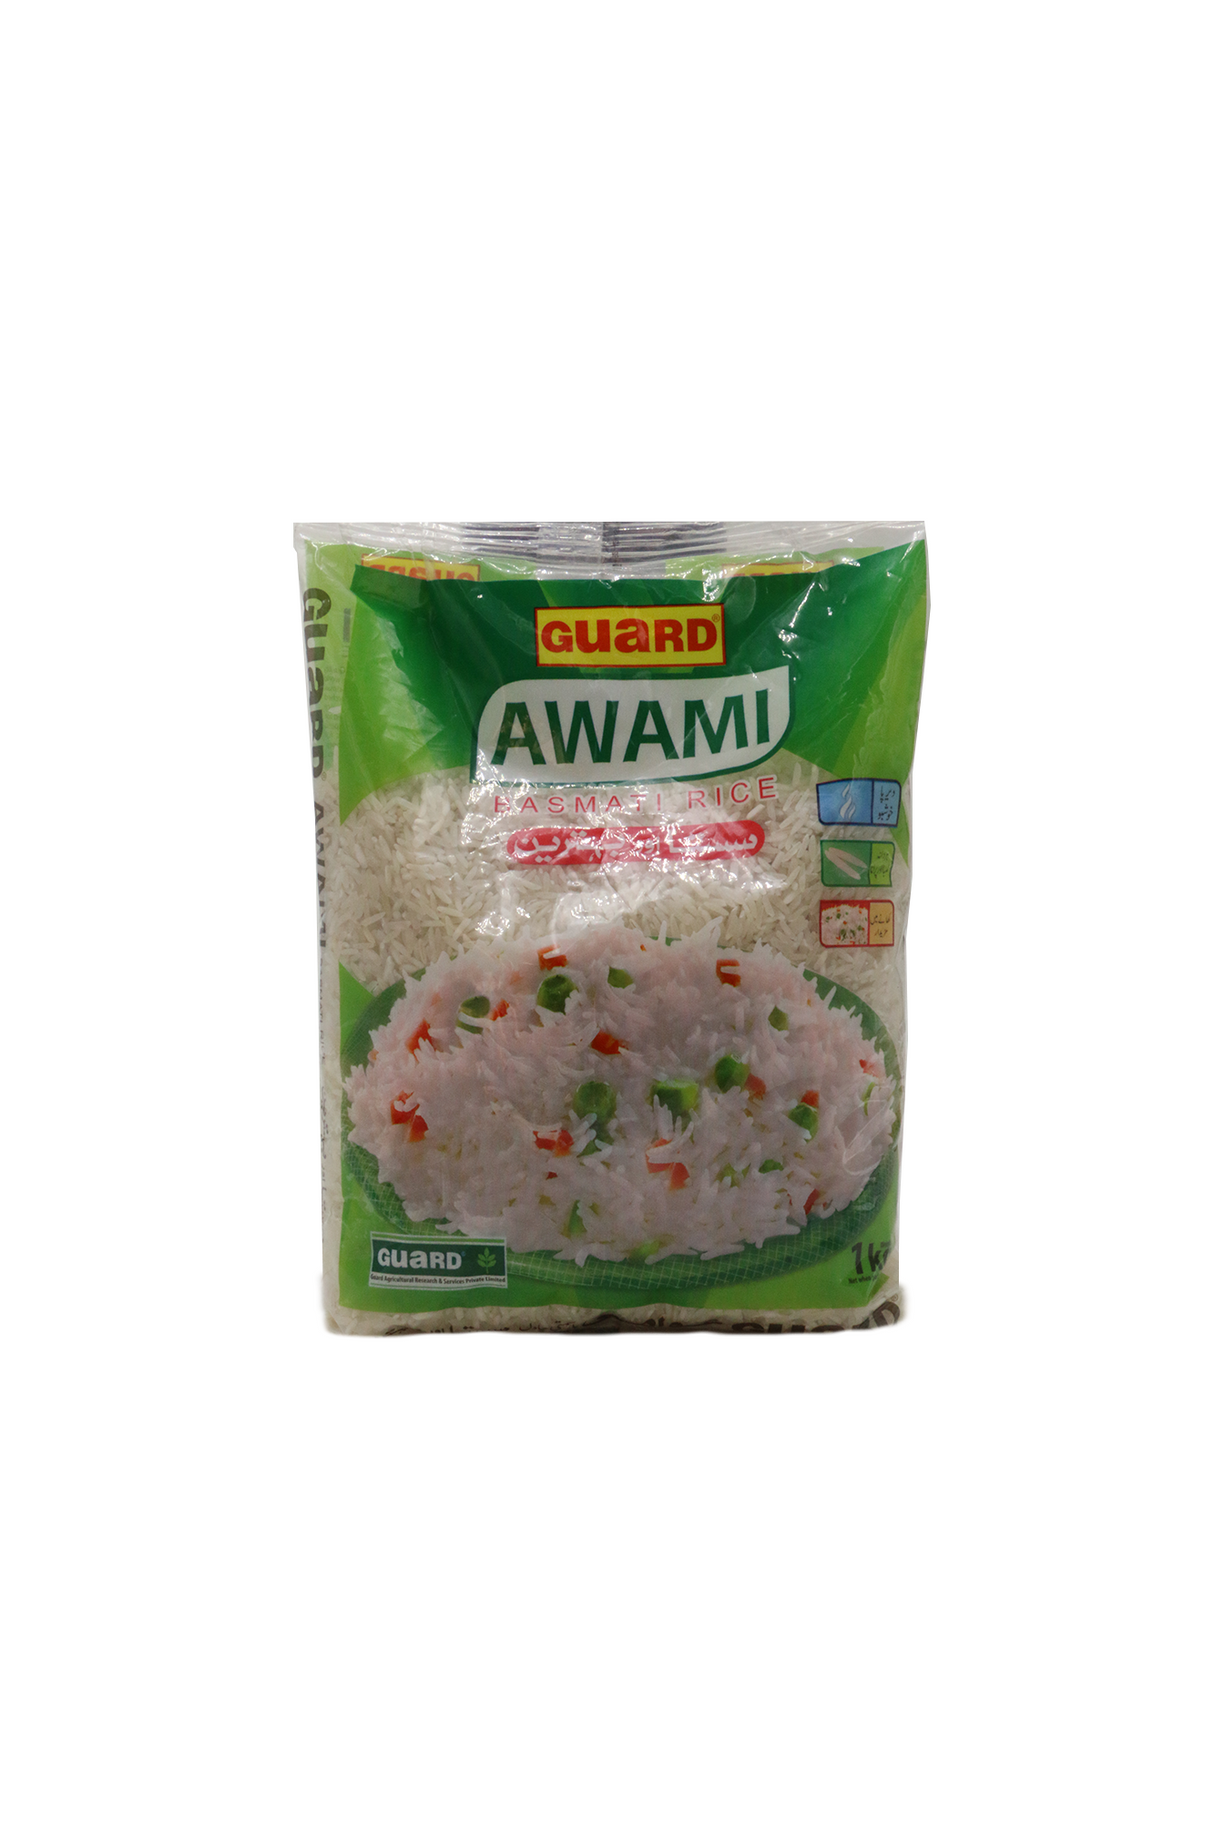 guard awami rice 1kg